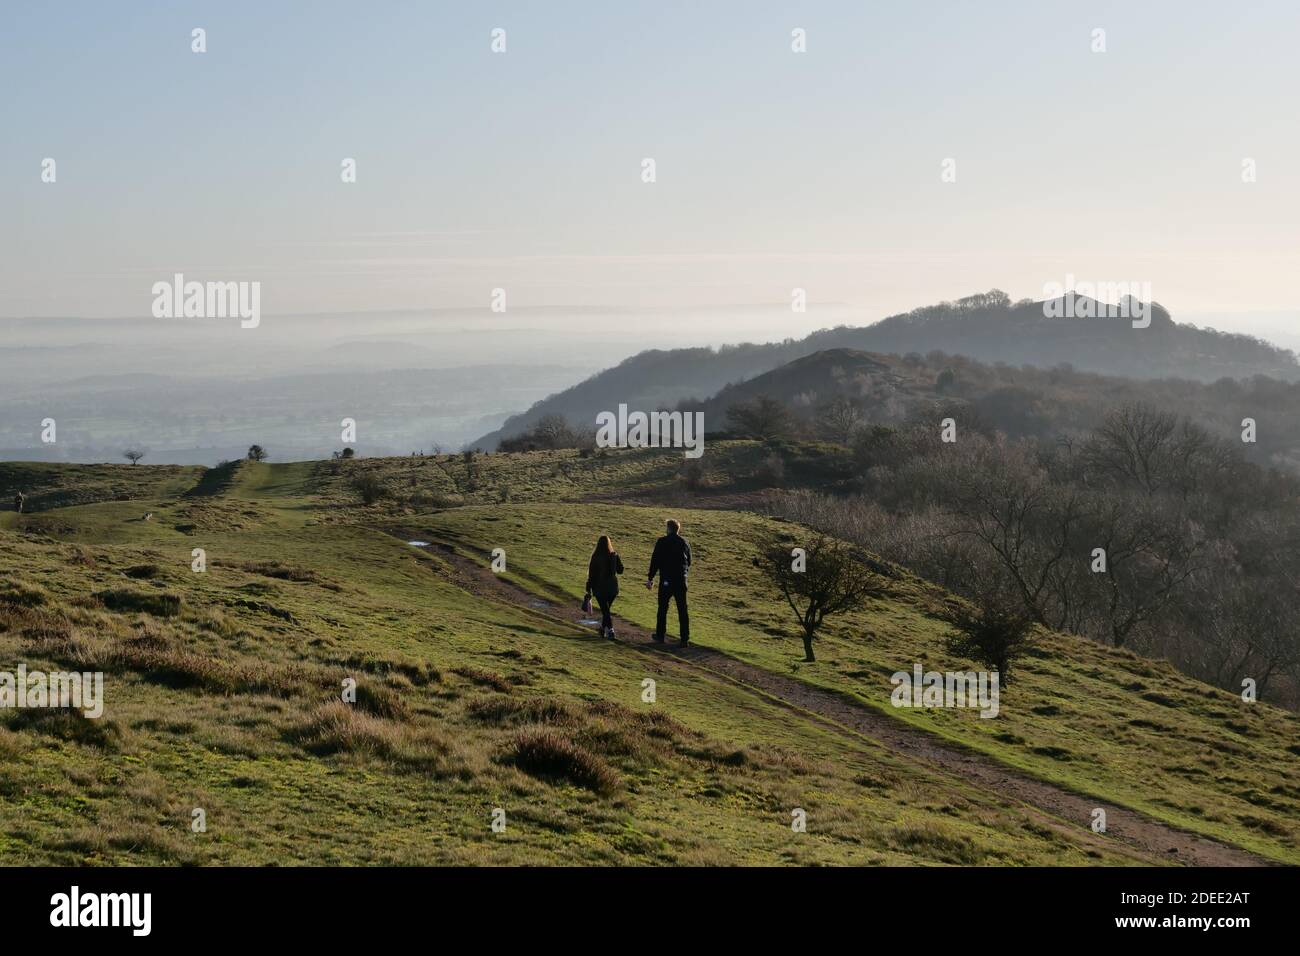 Walking at British Camp, on the Malvern Hills, near Ledbury, Herefordshire, England, UK Stock Photo